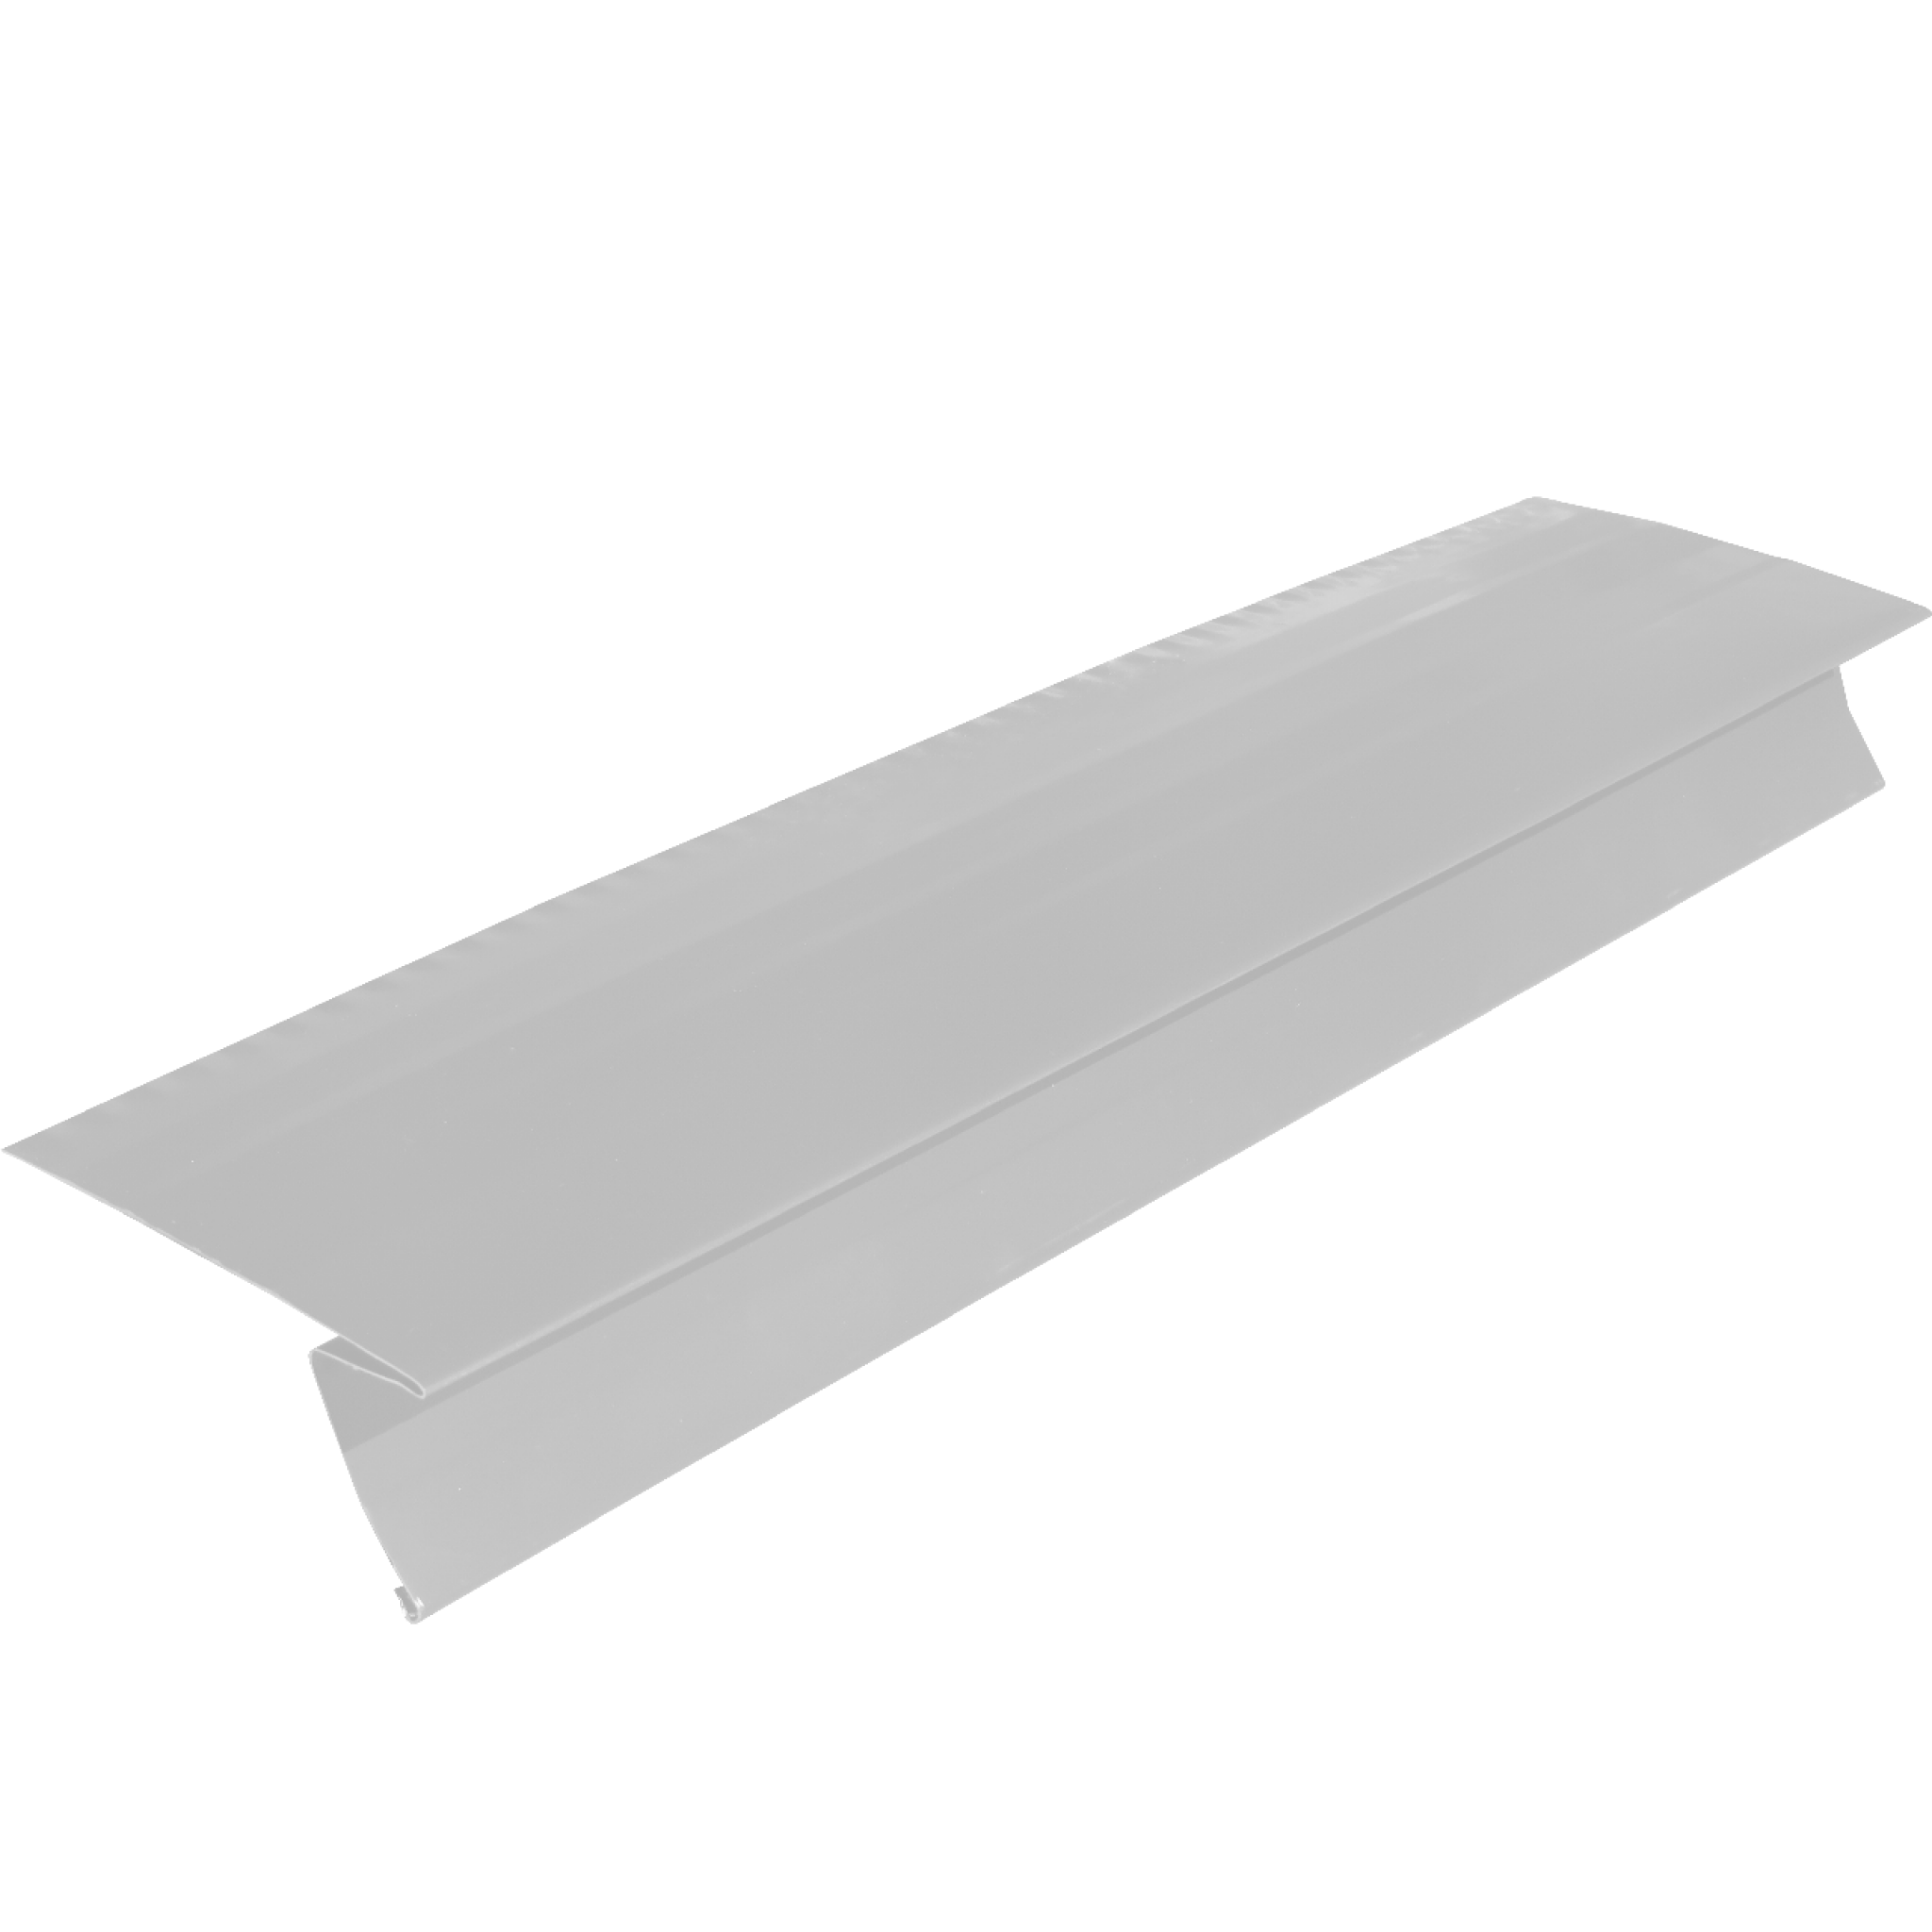 Standard Aluminum Roof Edge